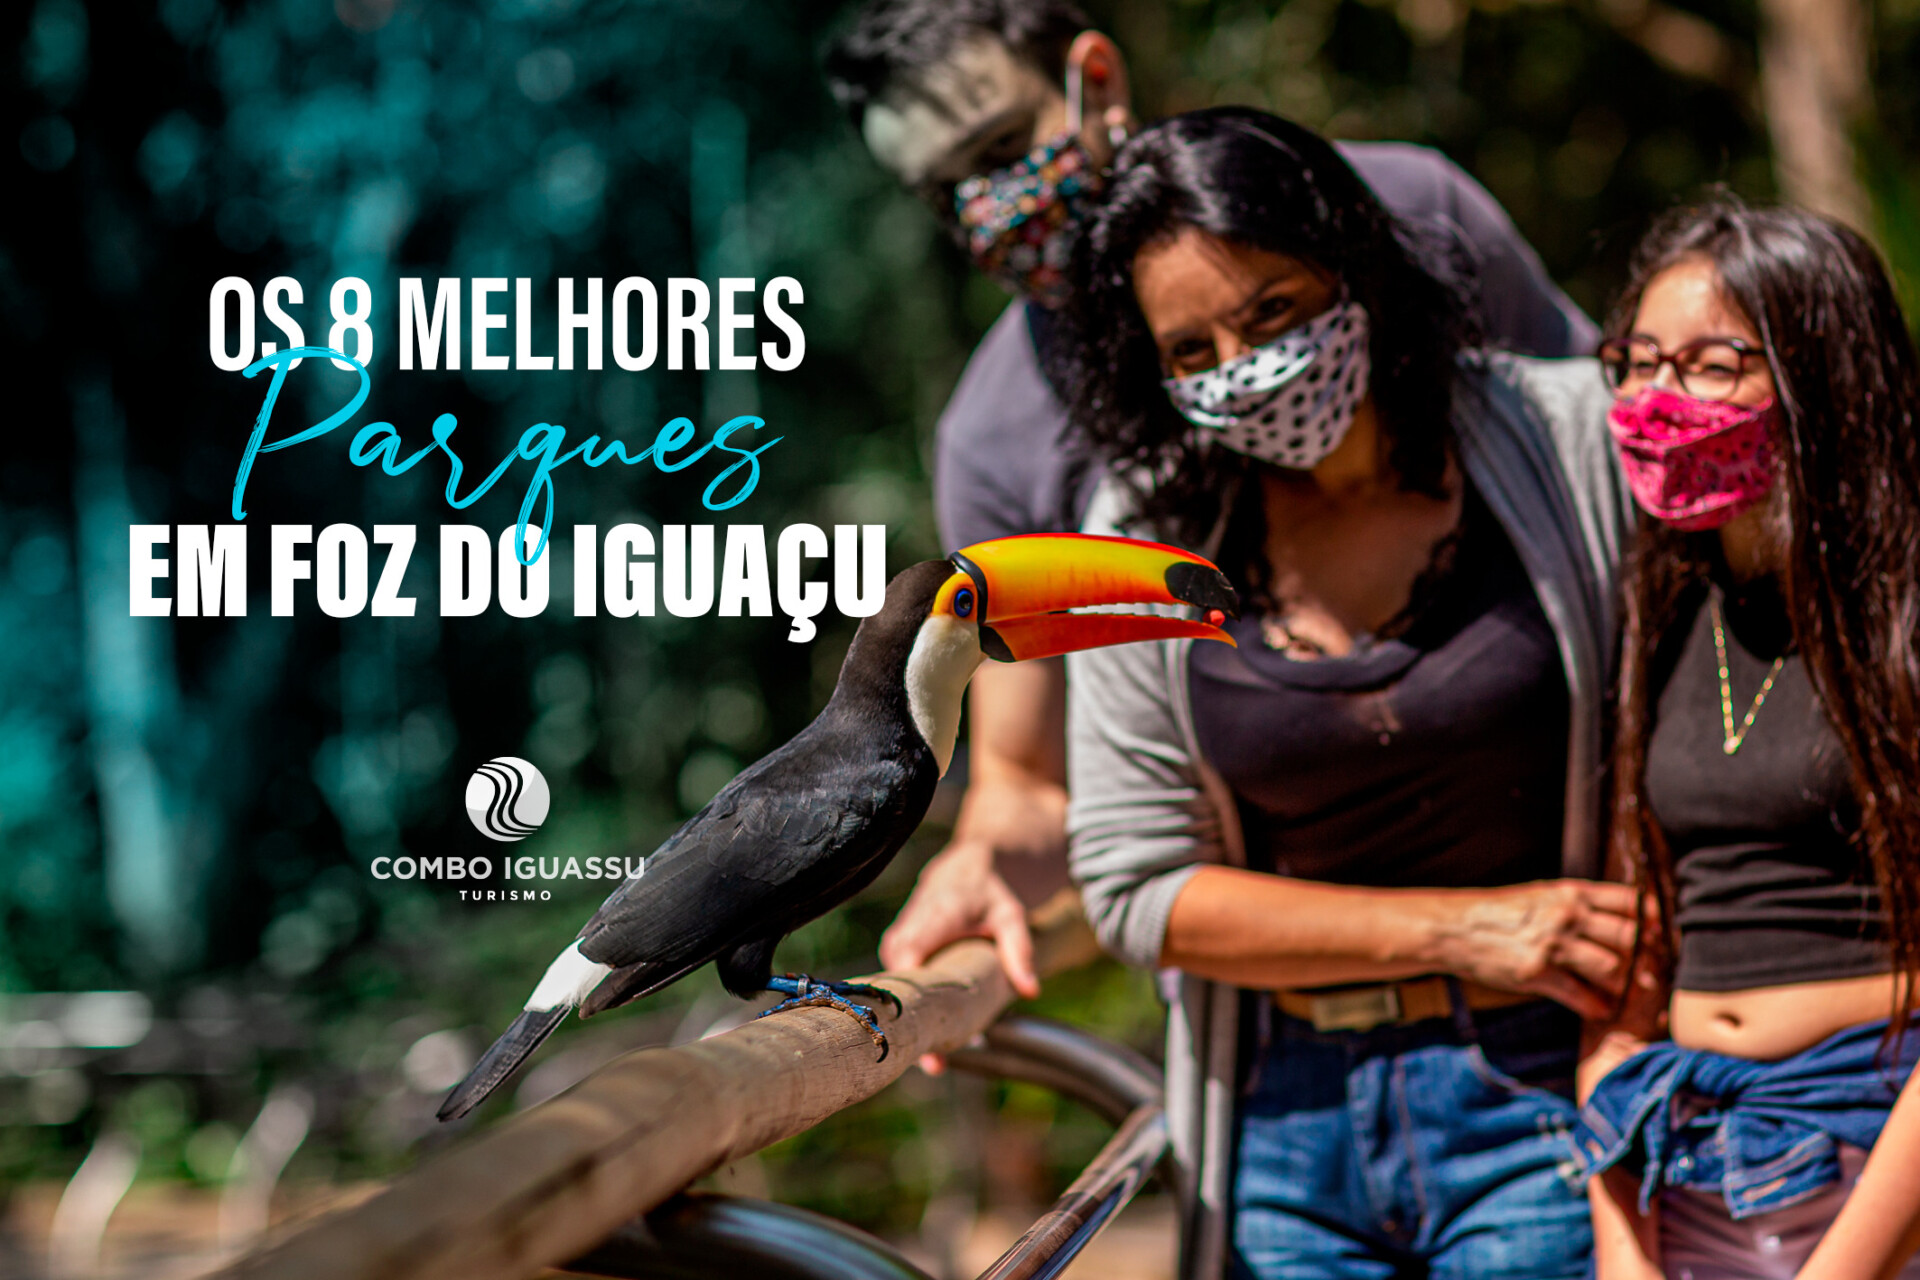 Parques em Foz do Iguaçu: Conheça os 8 melhores parques da cidade